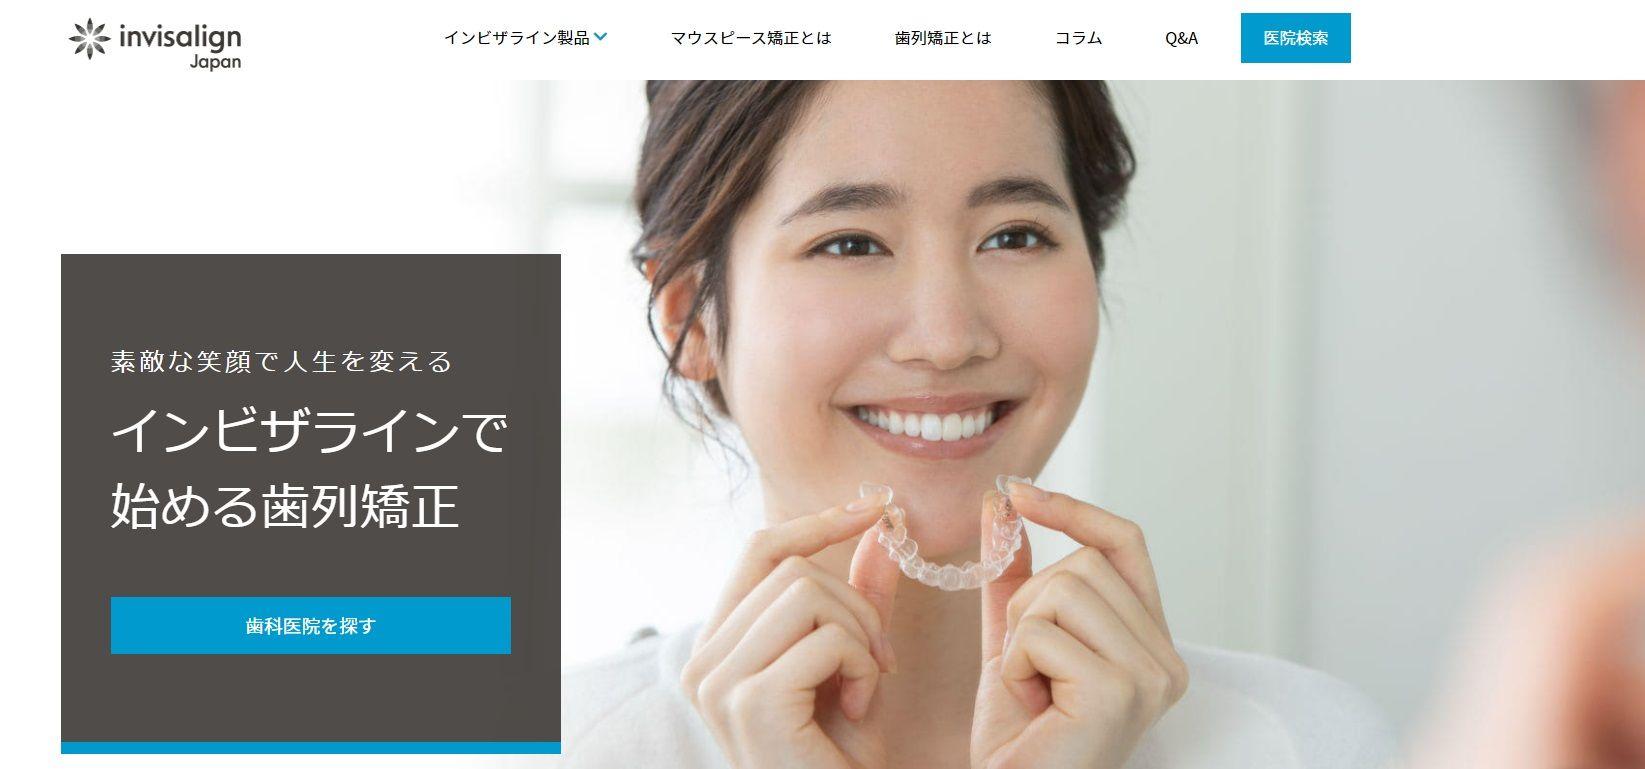 インビザラインジャパンのホームページ